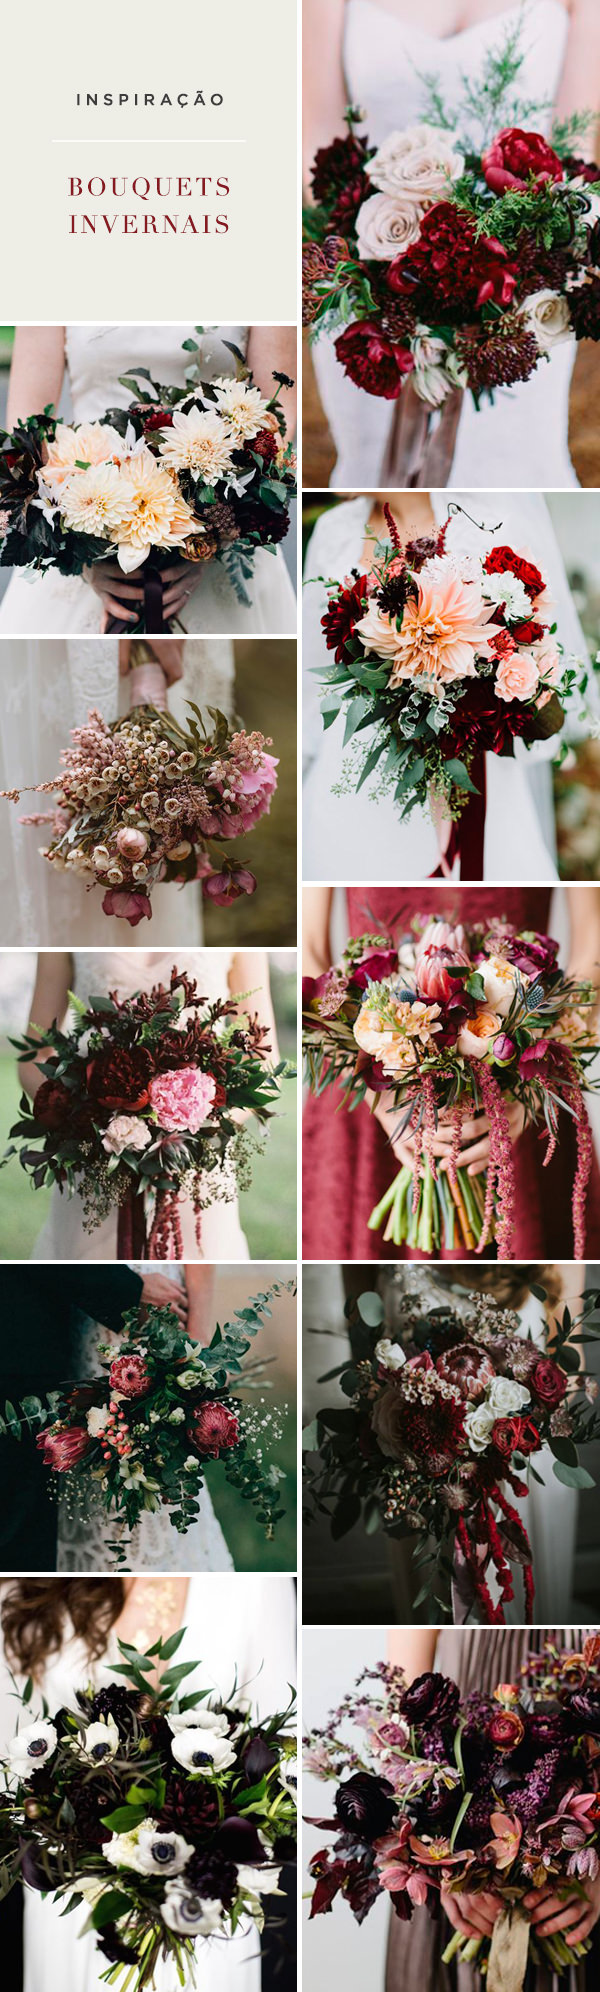 10 bouquets para casamentos no inverno